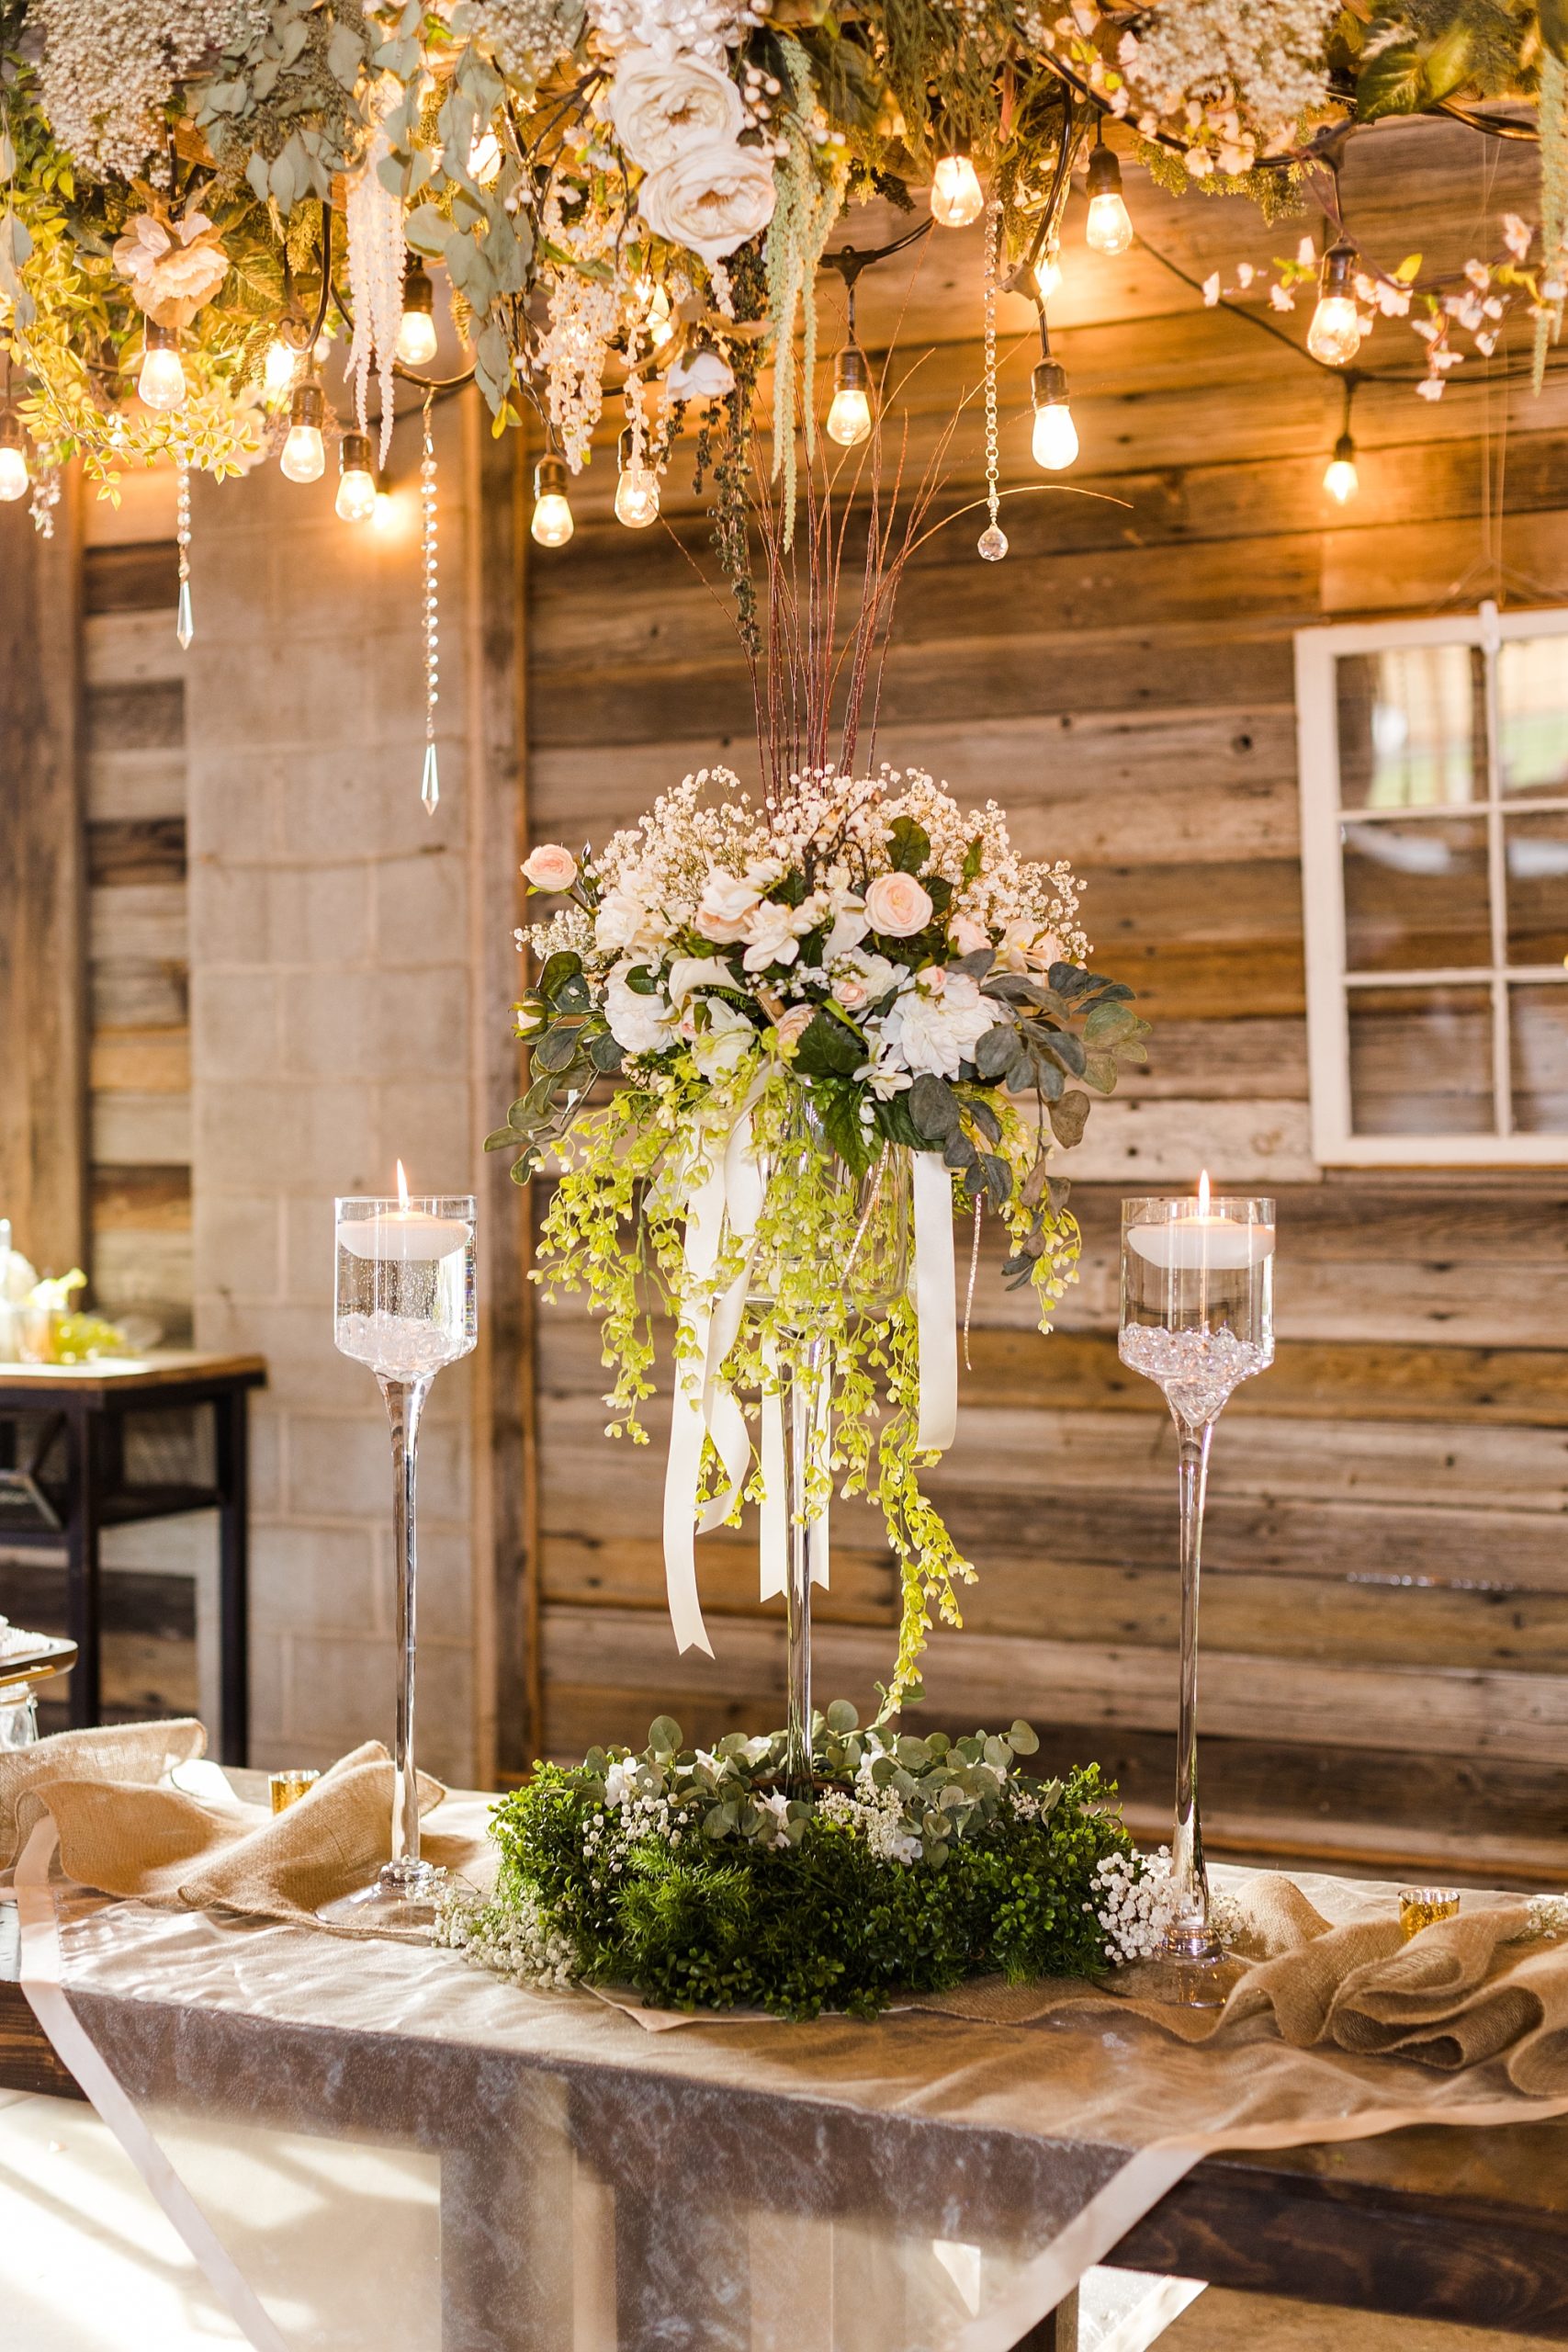 Elegant décor for a rustic barn wedding